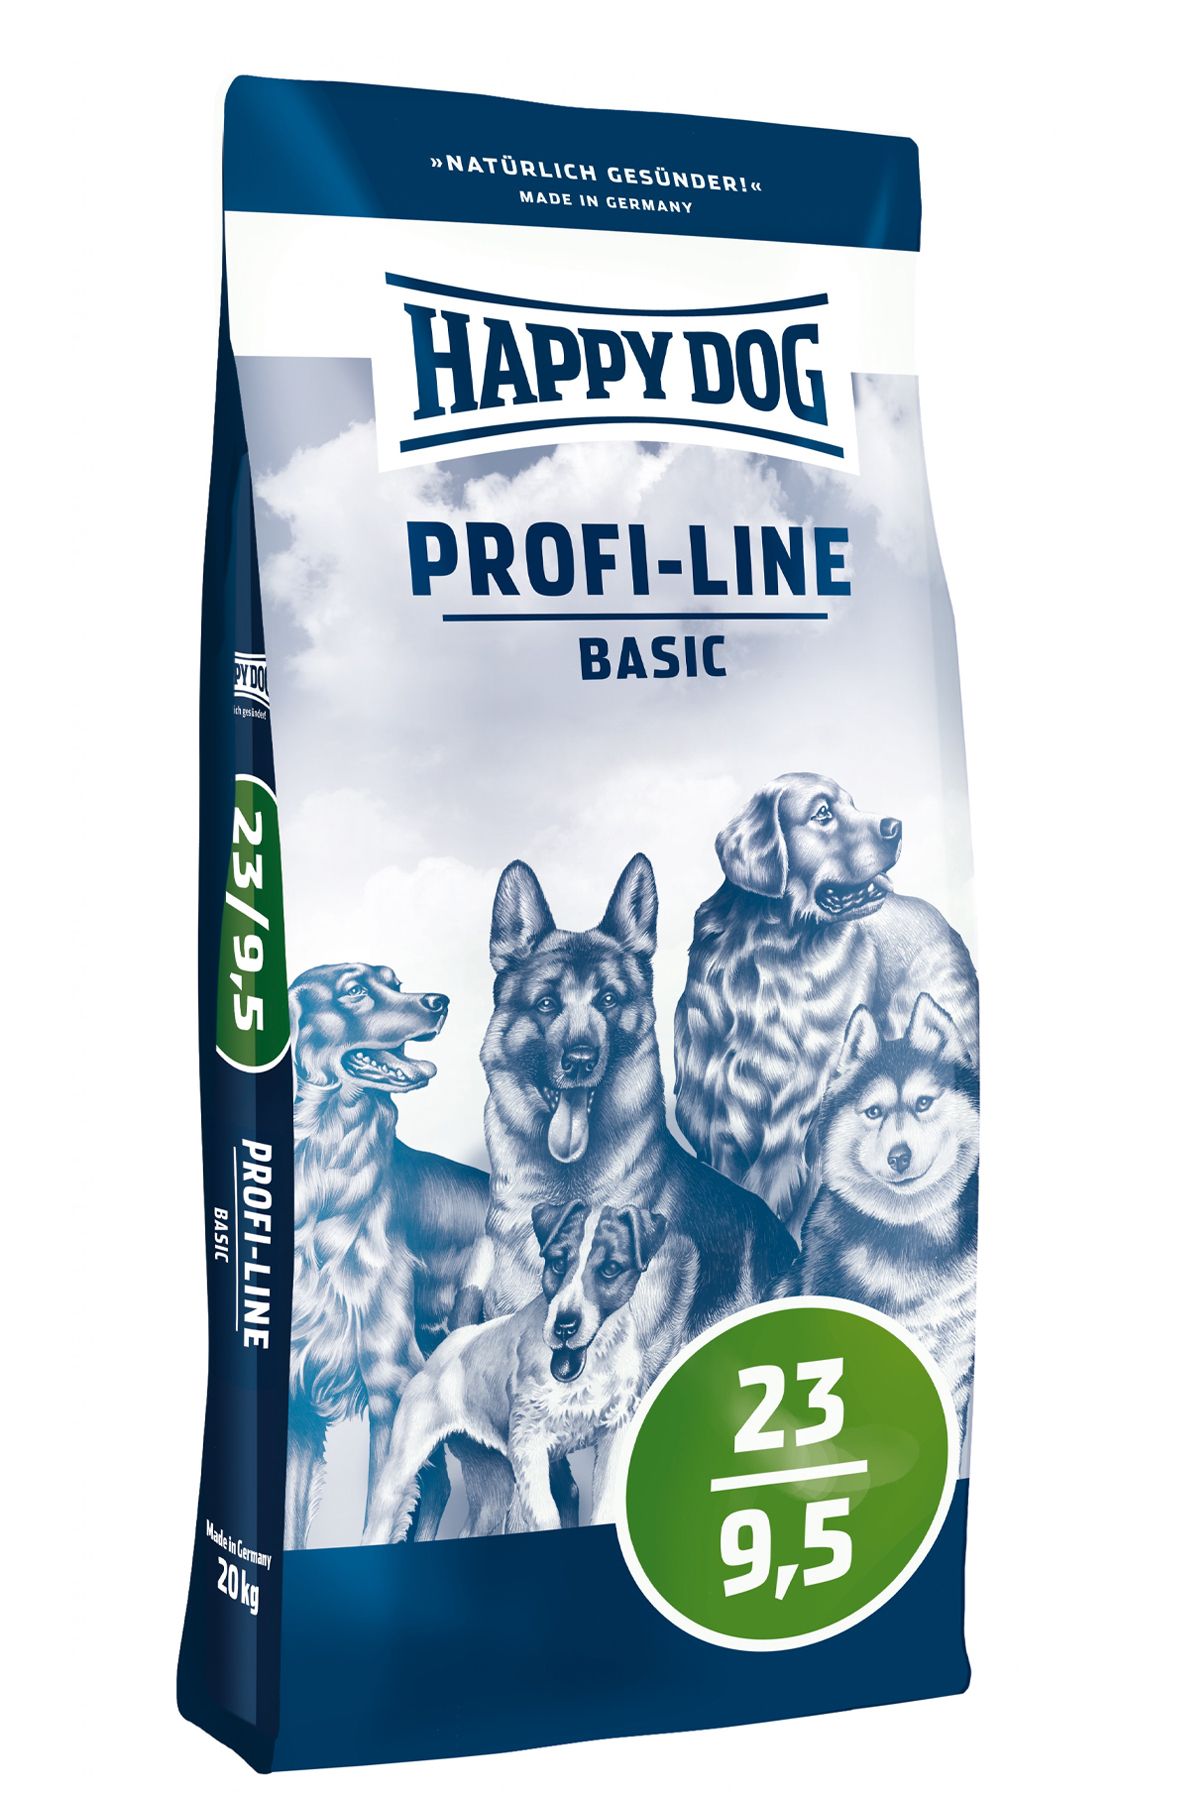 Happy Dog Profi Line 23-9,5 Basic Yetişkin Köpek Maması 20 Kg